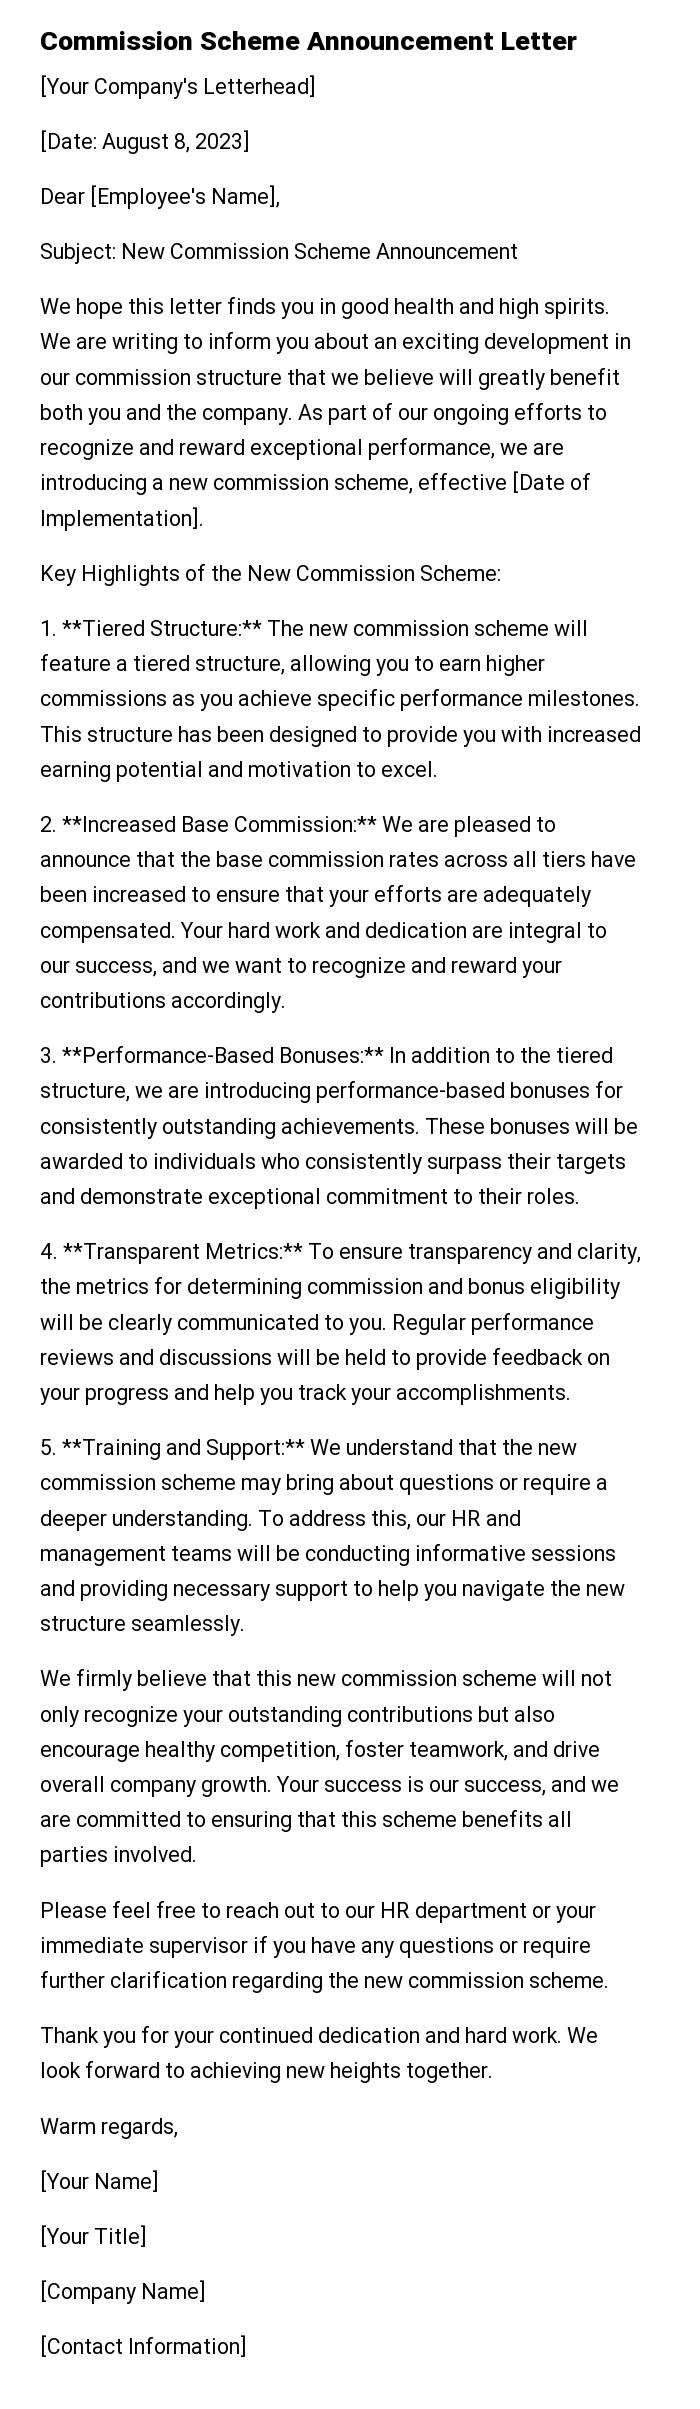 Commission Scheme Announcement Letter